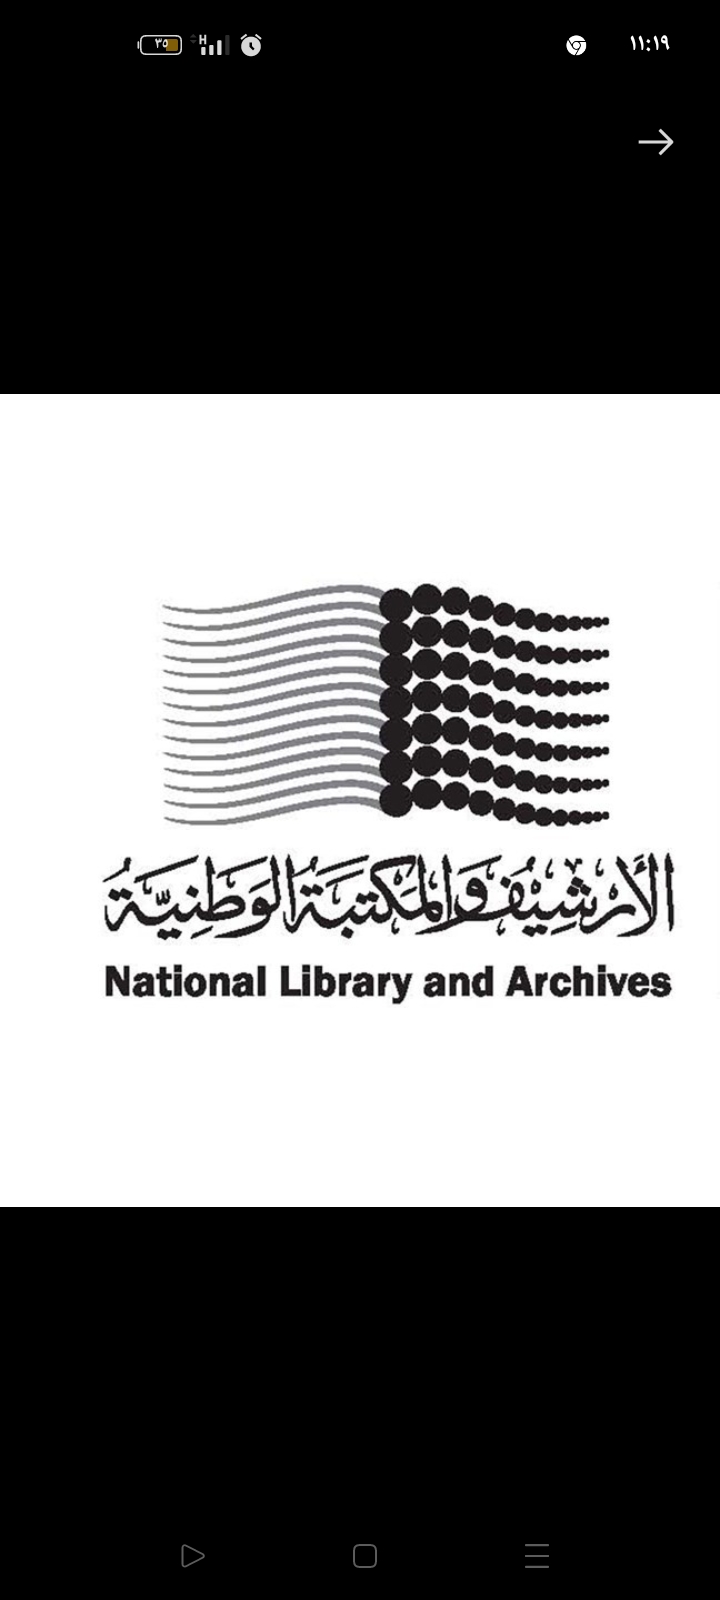 تحت عنوان: "التراث والهوية العربية في عصر الرقمنة ...الفرص والتحديات"